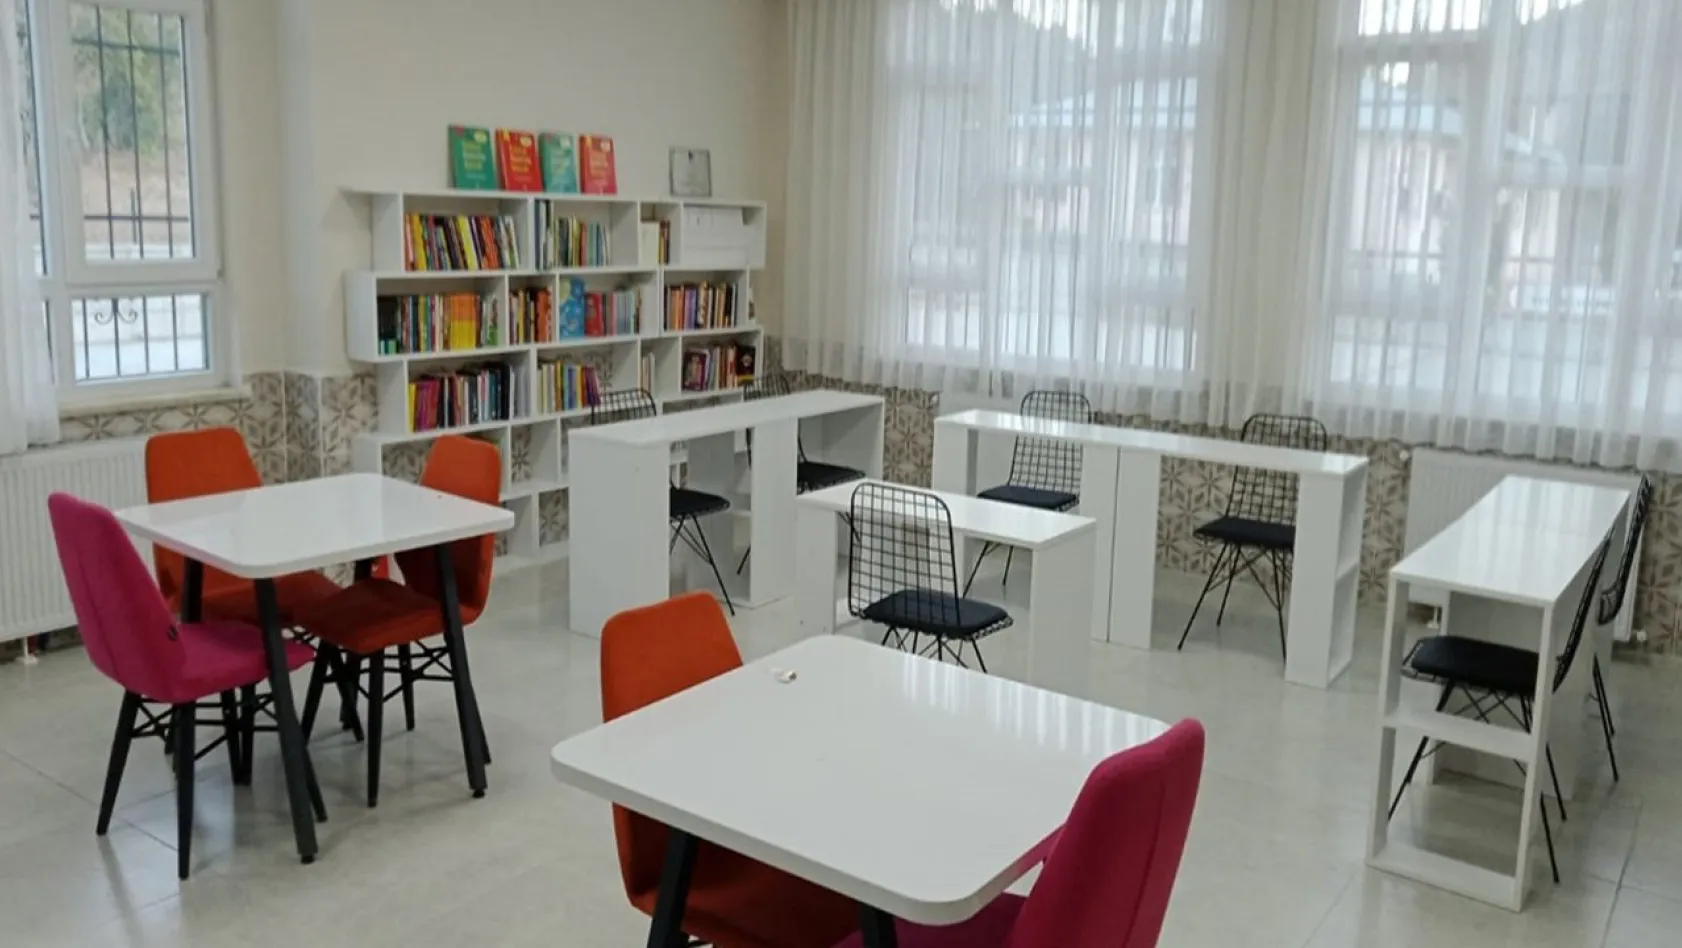 TÜSİAD Başkanı Turan Keban'da bir okula kütüphane kazandırdı